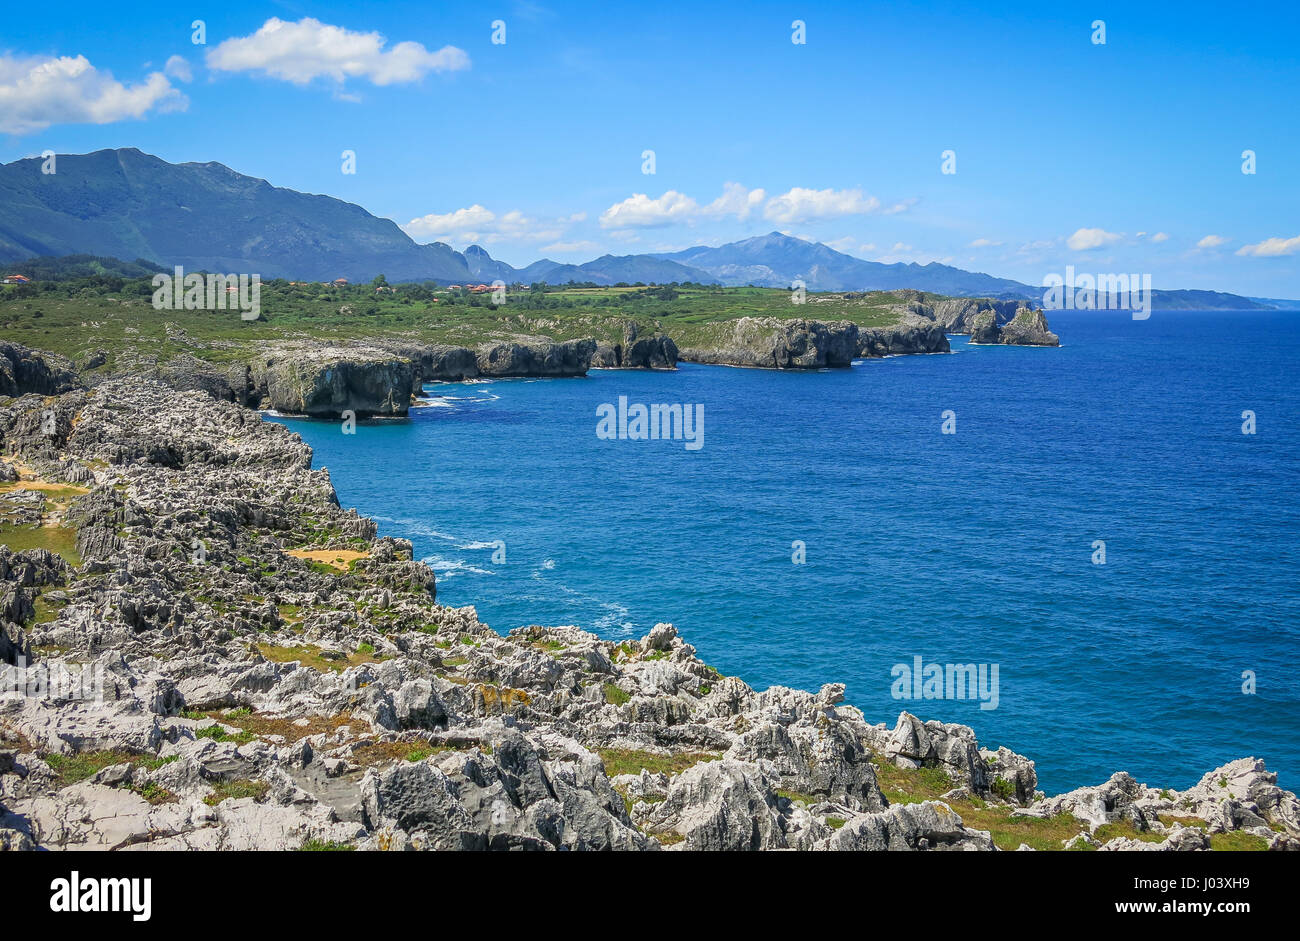 Scenic coastline at Cabo de Mar, between Llanes and Ribadesella, Asturias, northern Spain Stock Photo